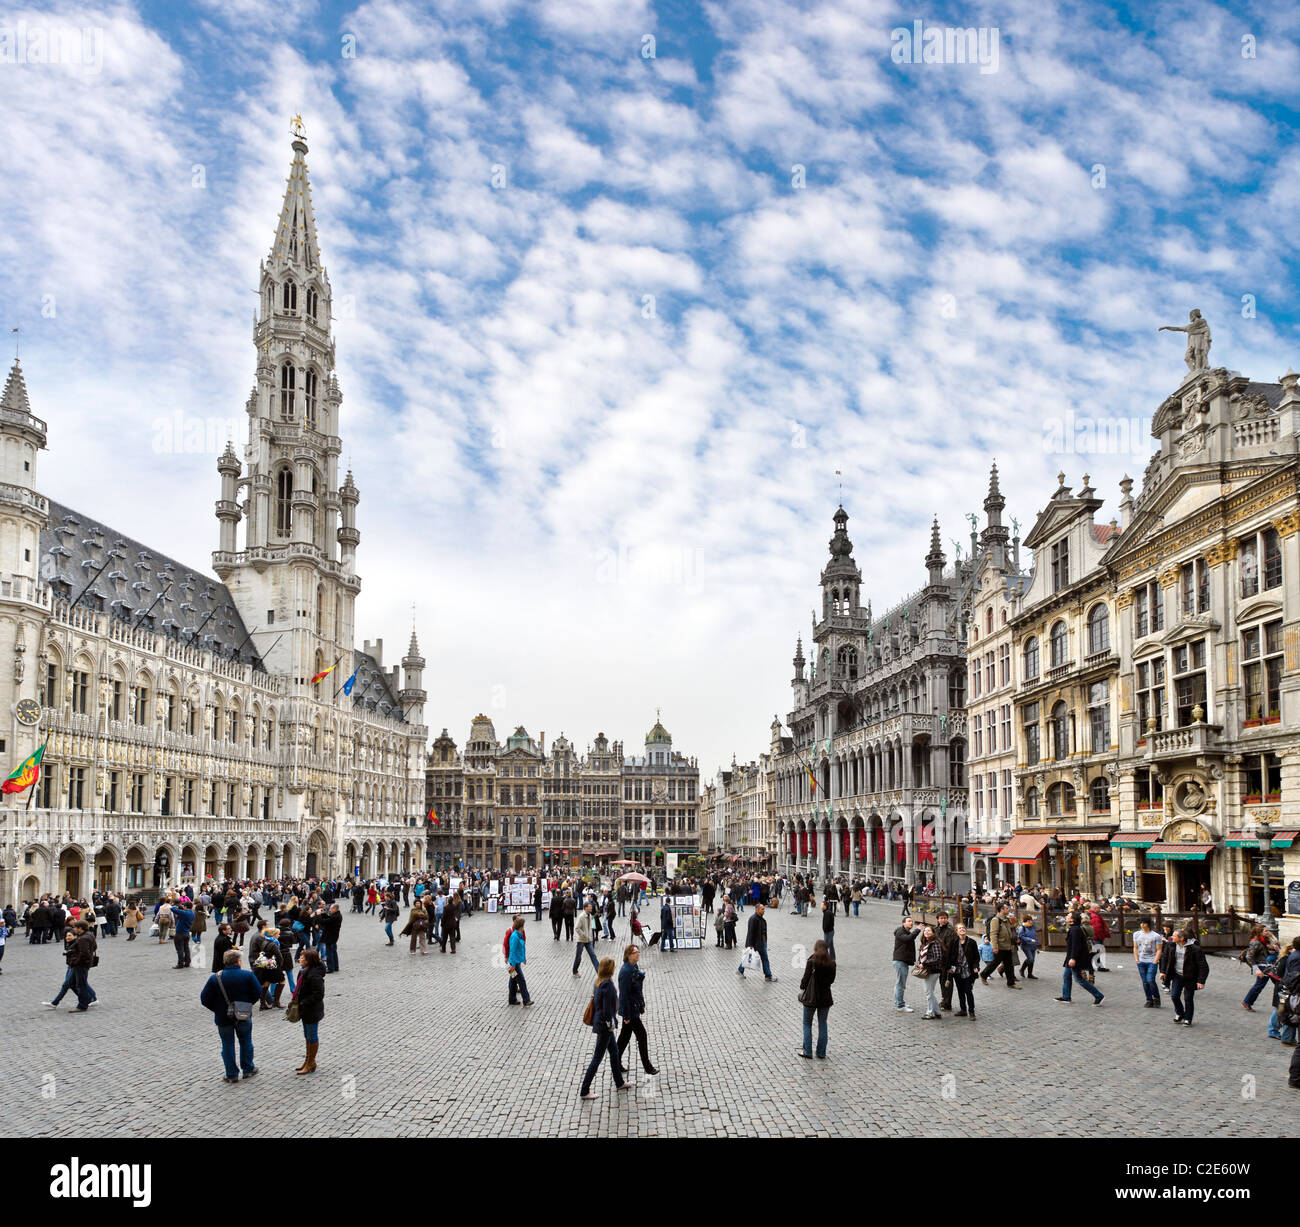 La Grand Place (place principale) avec l'Hôtel de Ville (mairie) à gauche, Bruxelles, Belgique Banque D'Images